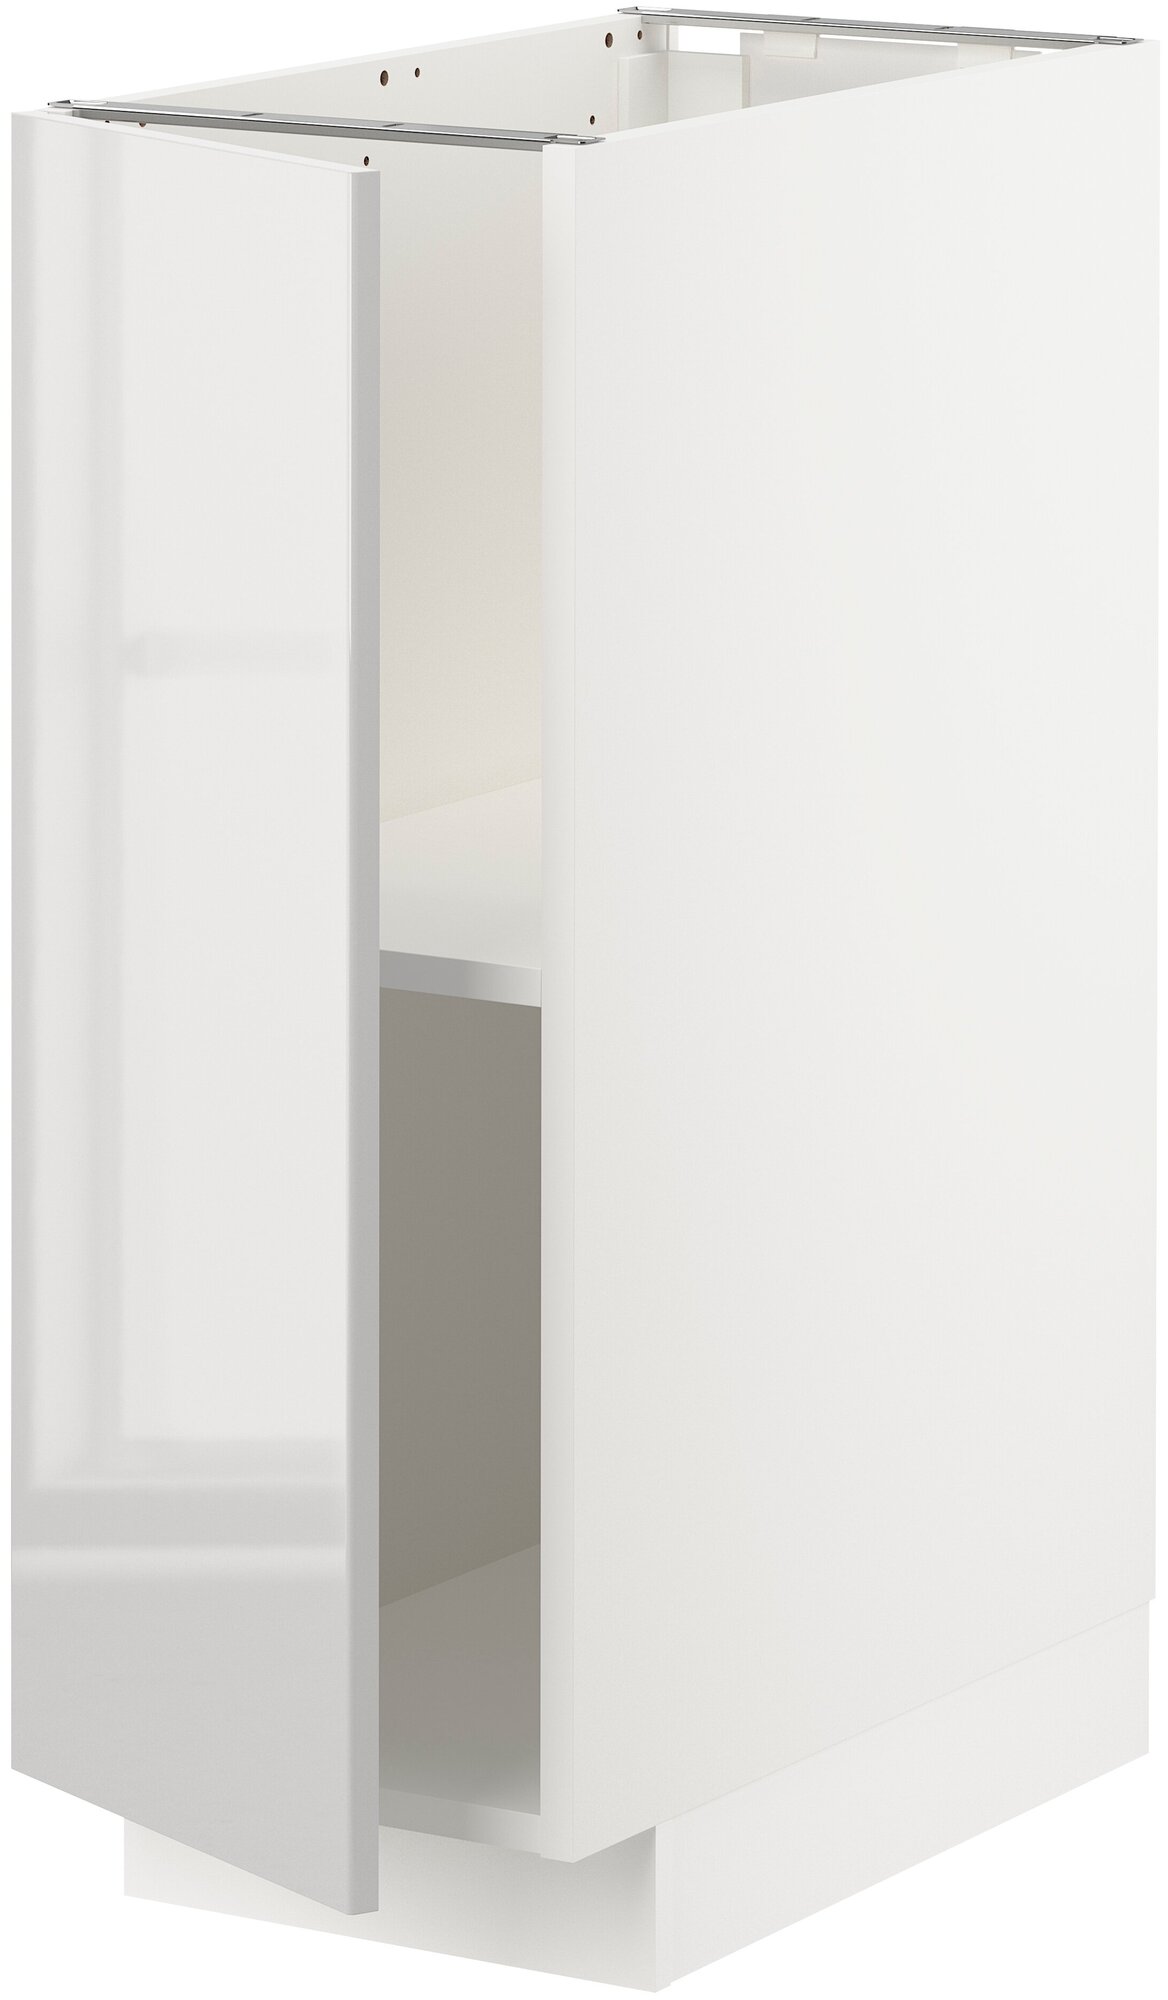 METOD метод напольный шкаф с полками 30x60 см белый/Рингульт светло-серый - фотография № 1